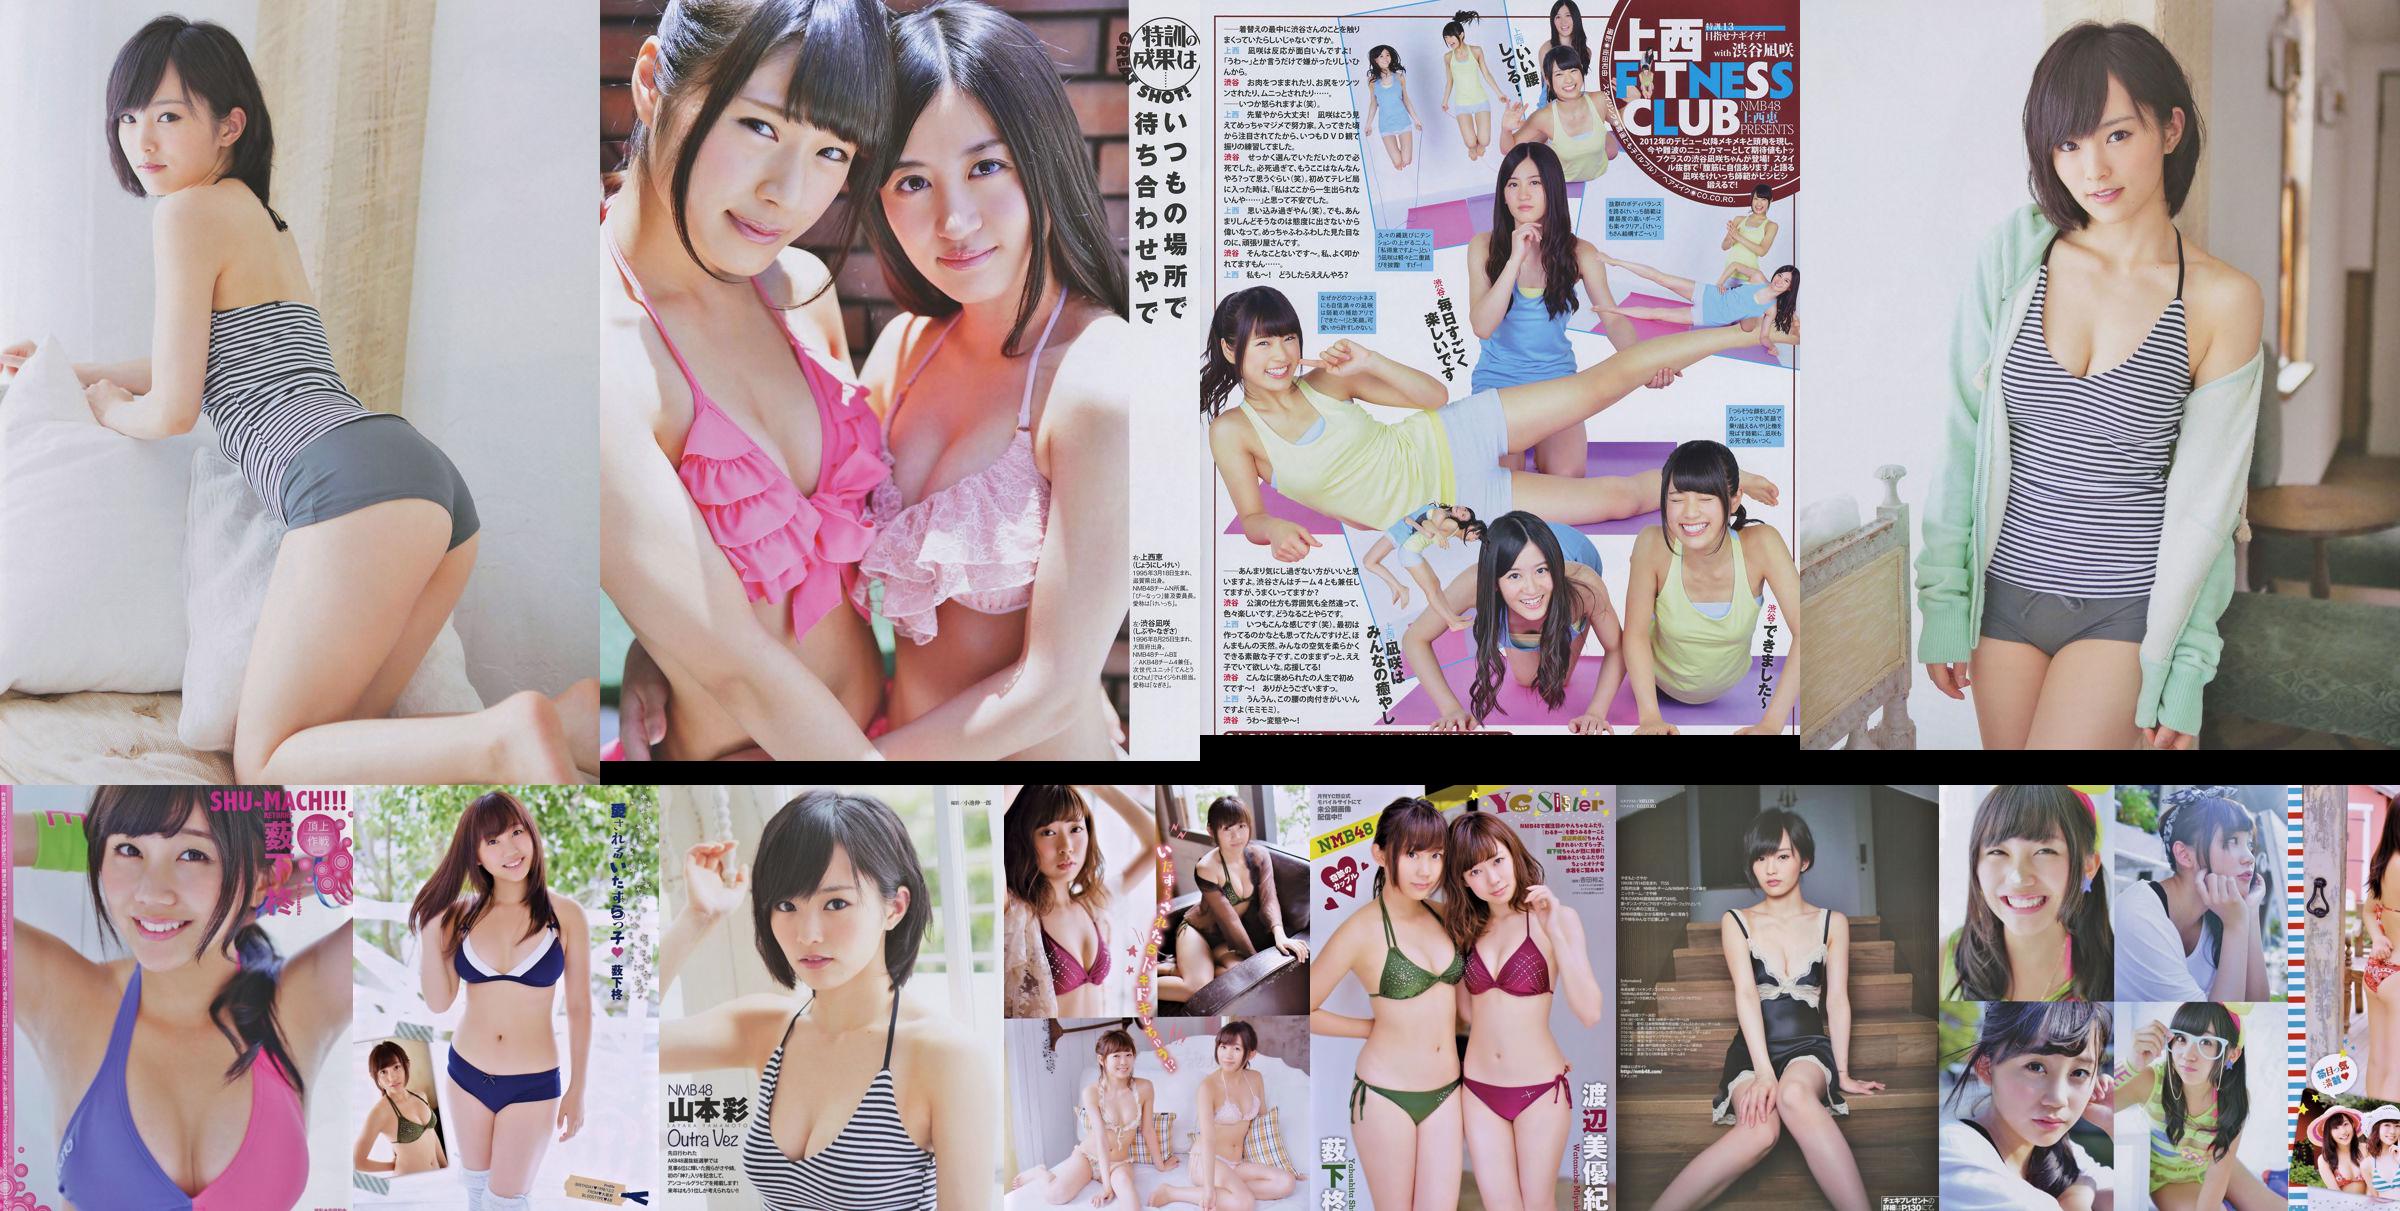 [Young Champion Retsu] Shu Yabushita Miyuki Watanabe 2014 No.10 Photograph No.10b240 Page 1